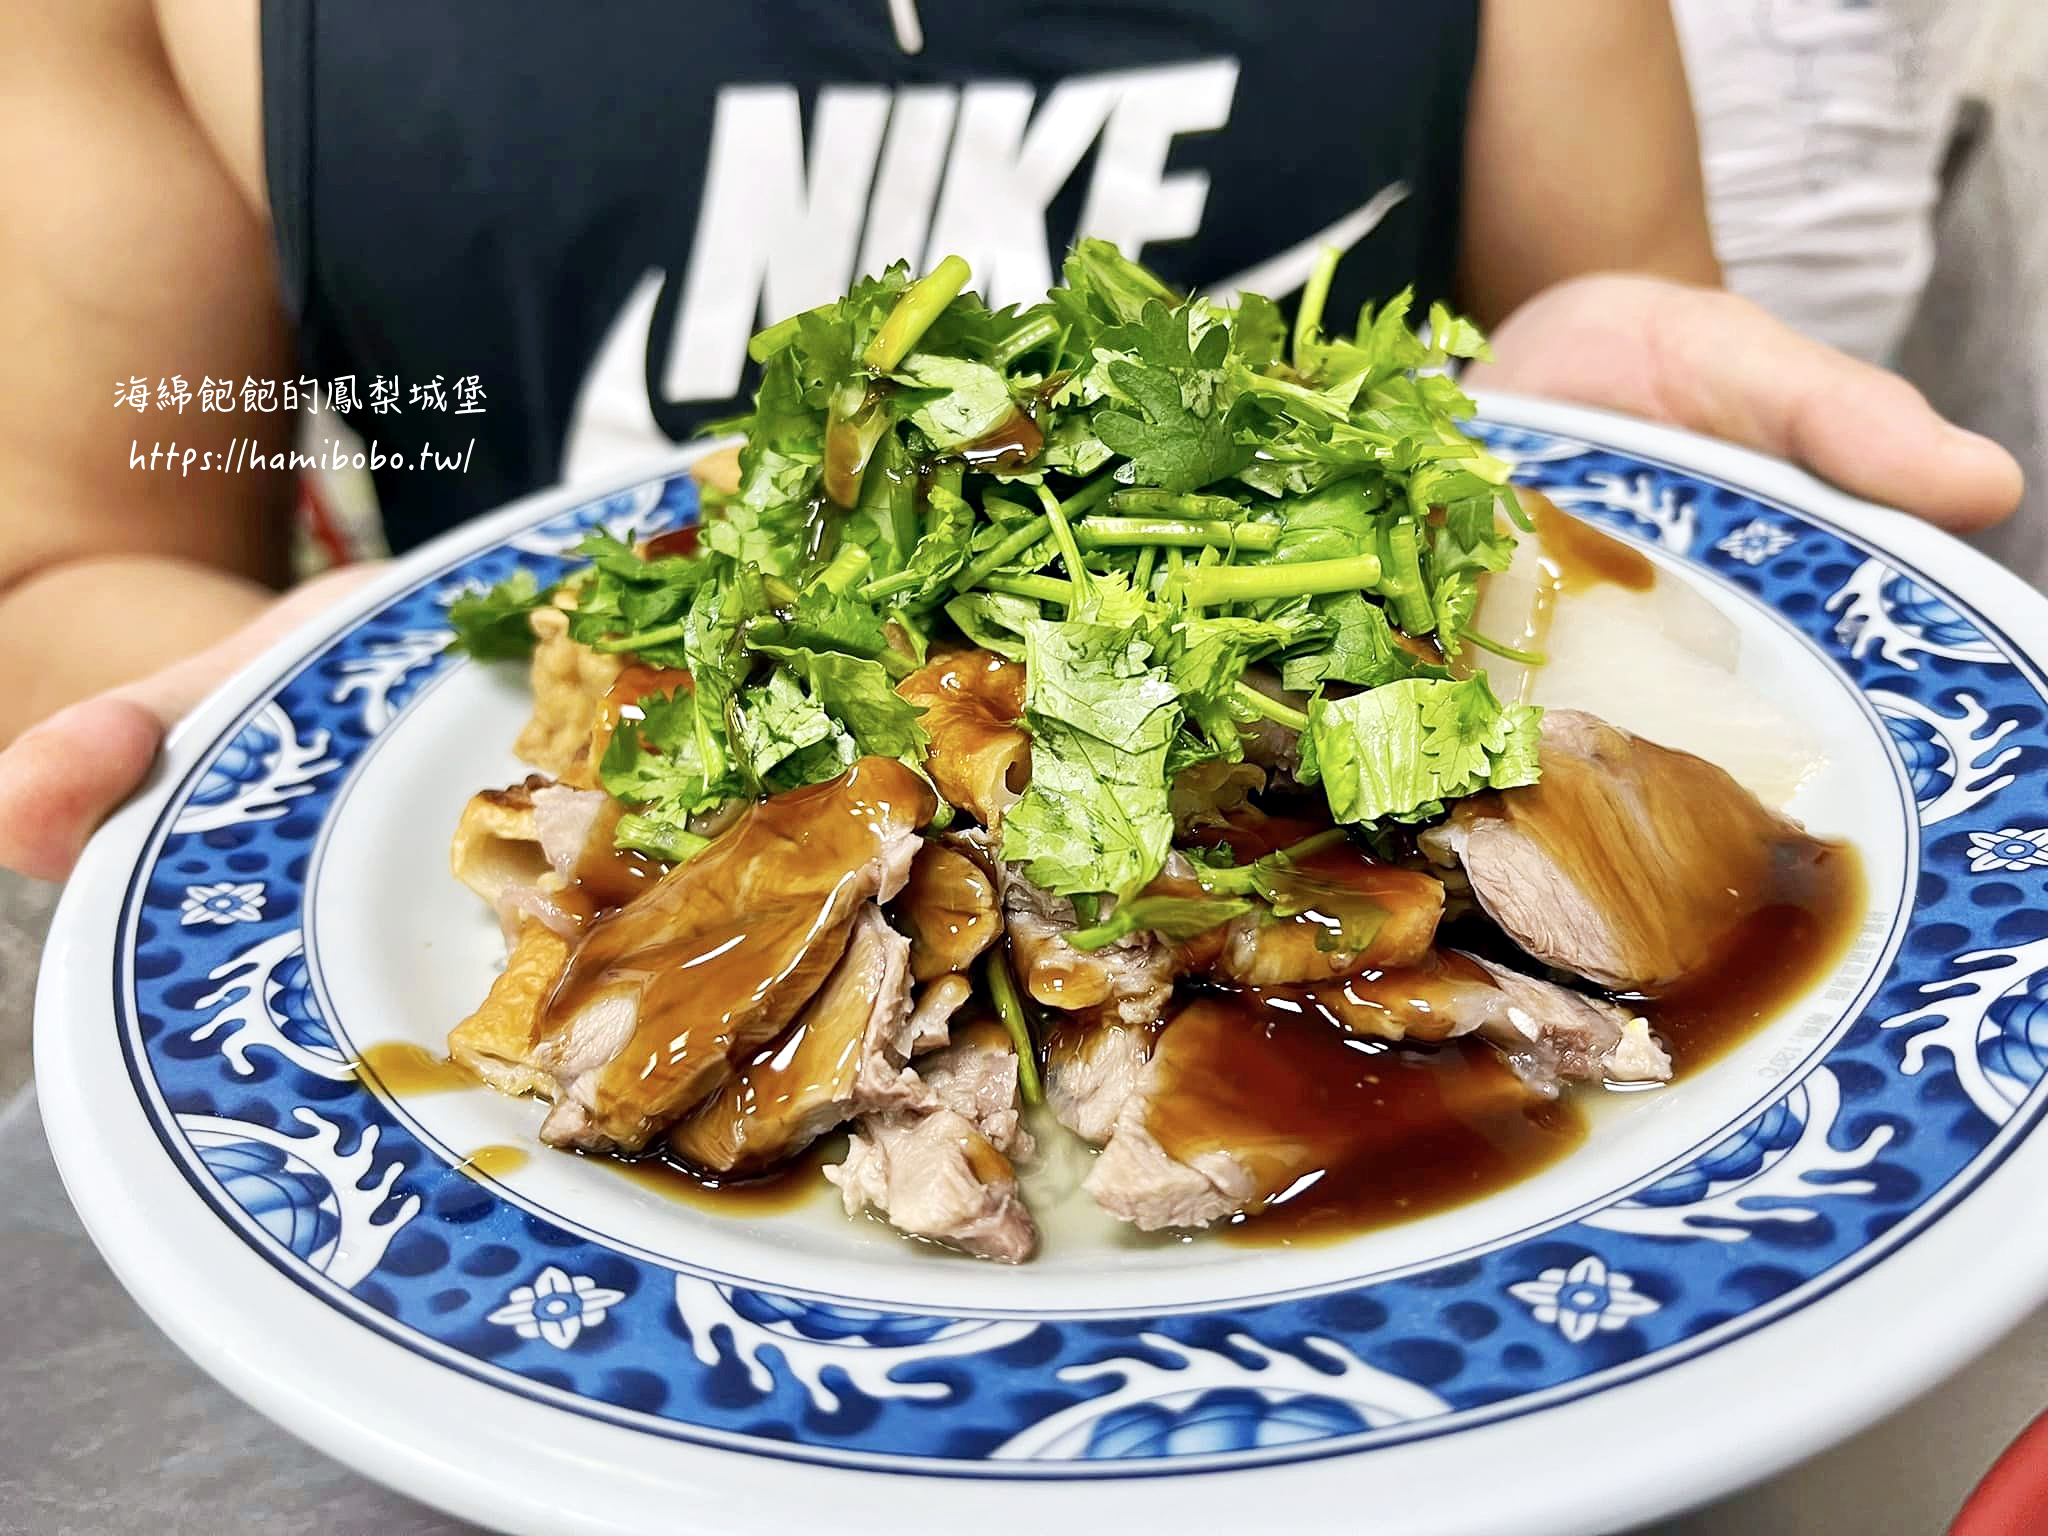 廣州烤鴨美食專家的菜單價位 @海綿飽飽的鳳梨城堡